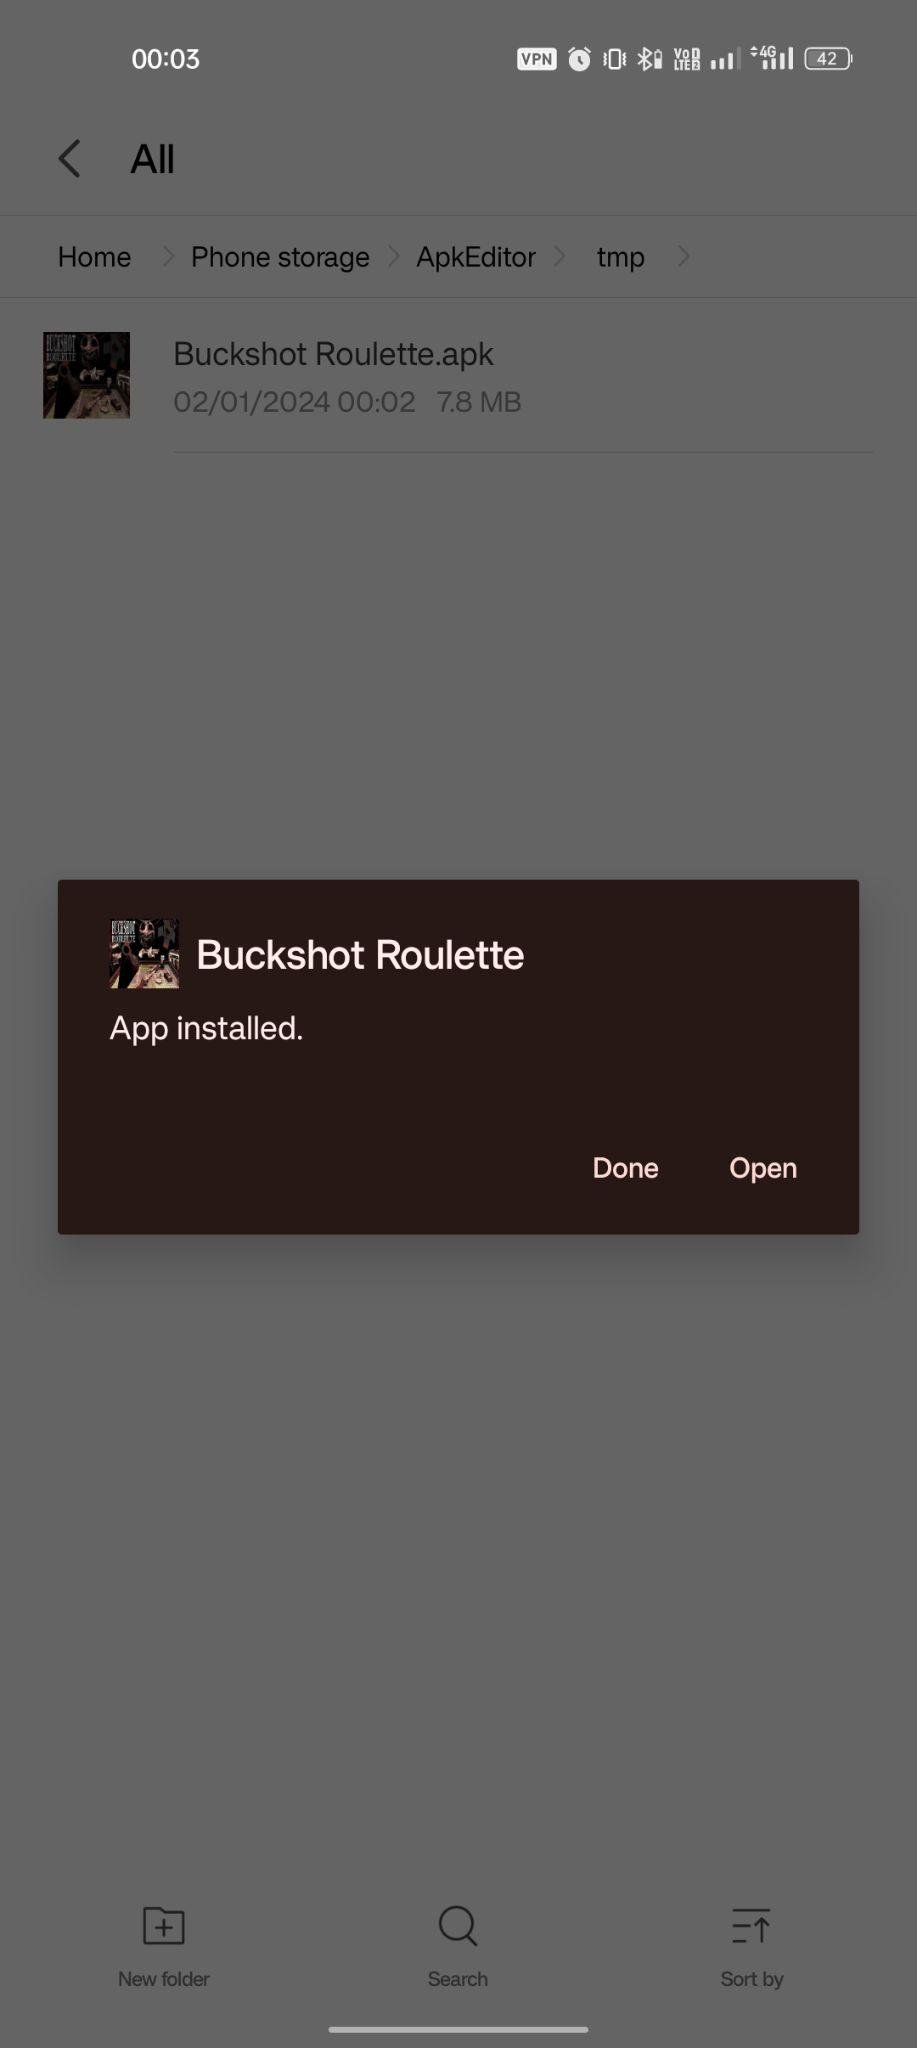 Buckshot Roulette apk installed